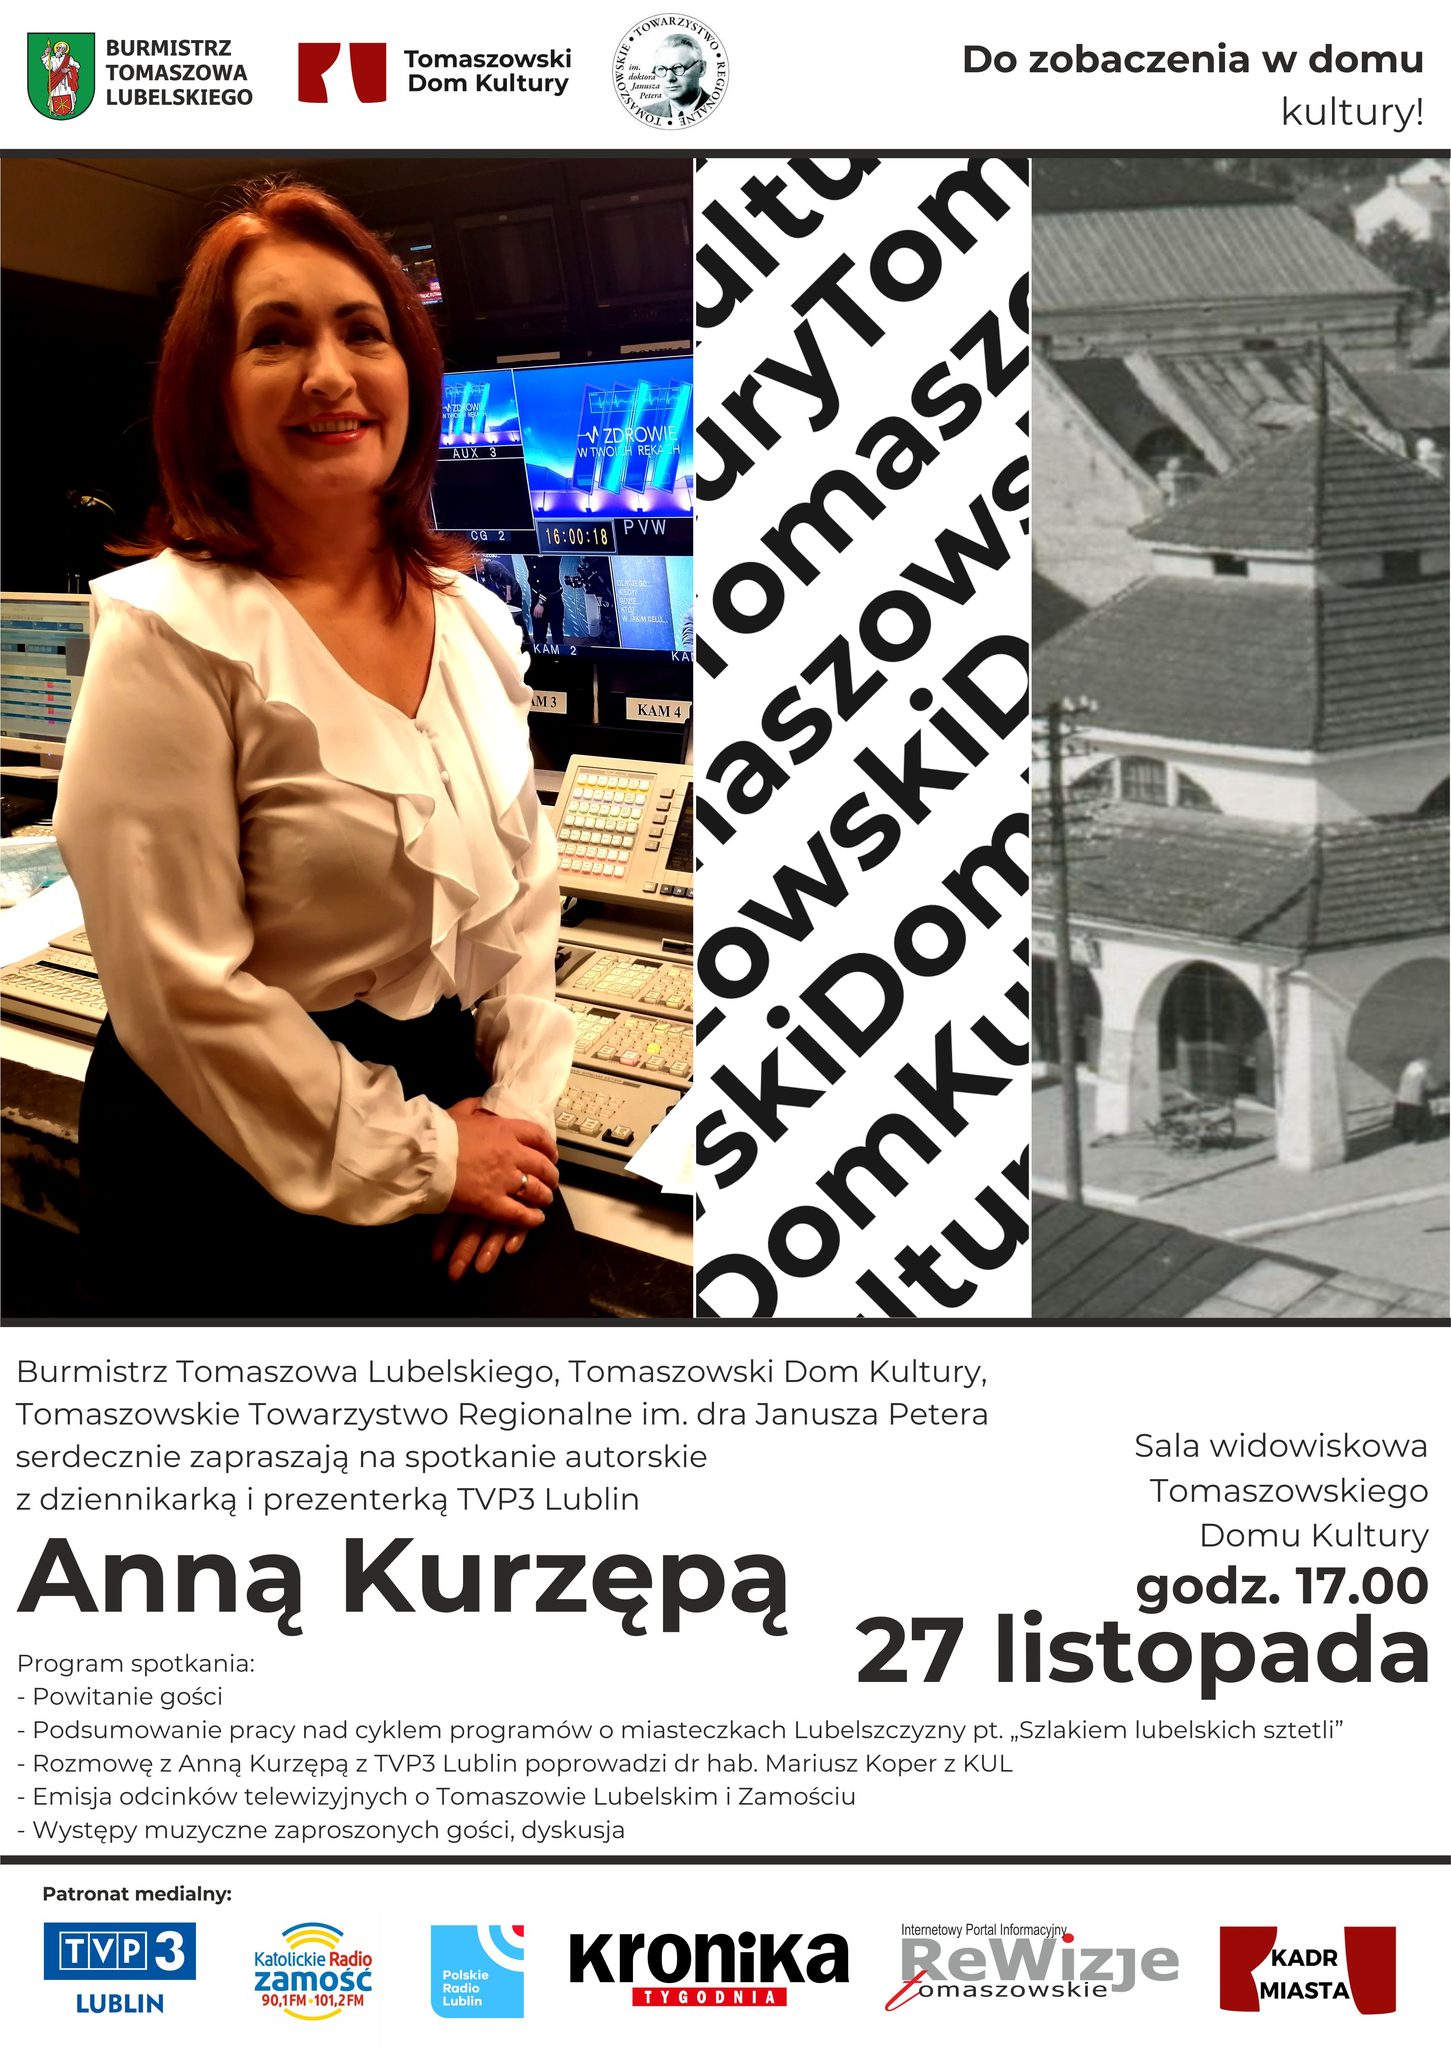 Spotkanie autorskie z Anną Kurzępą